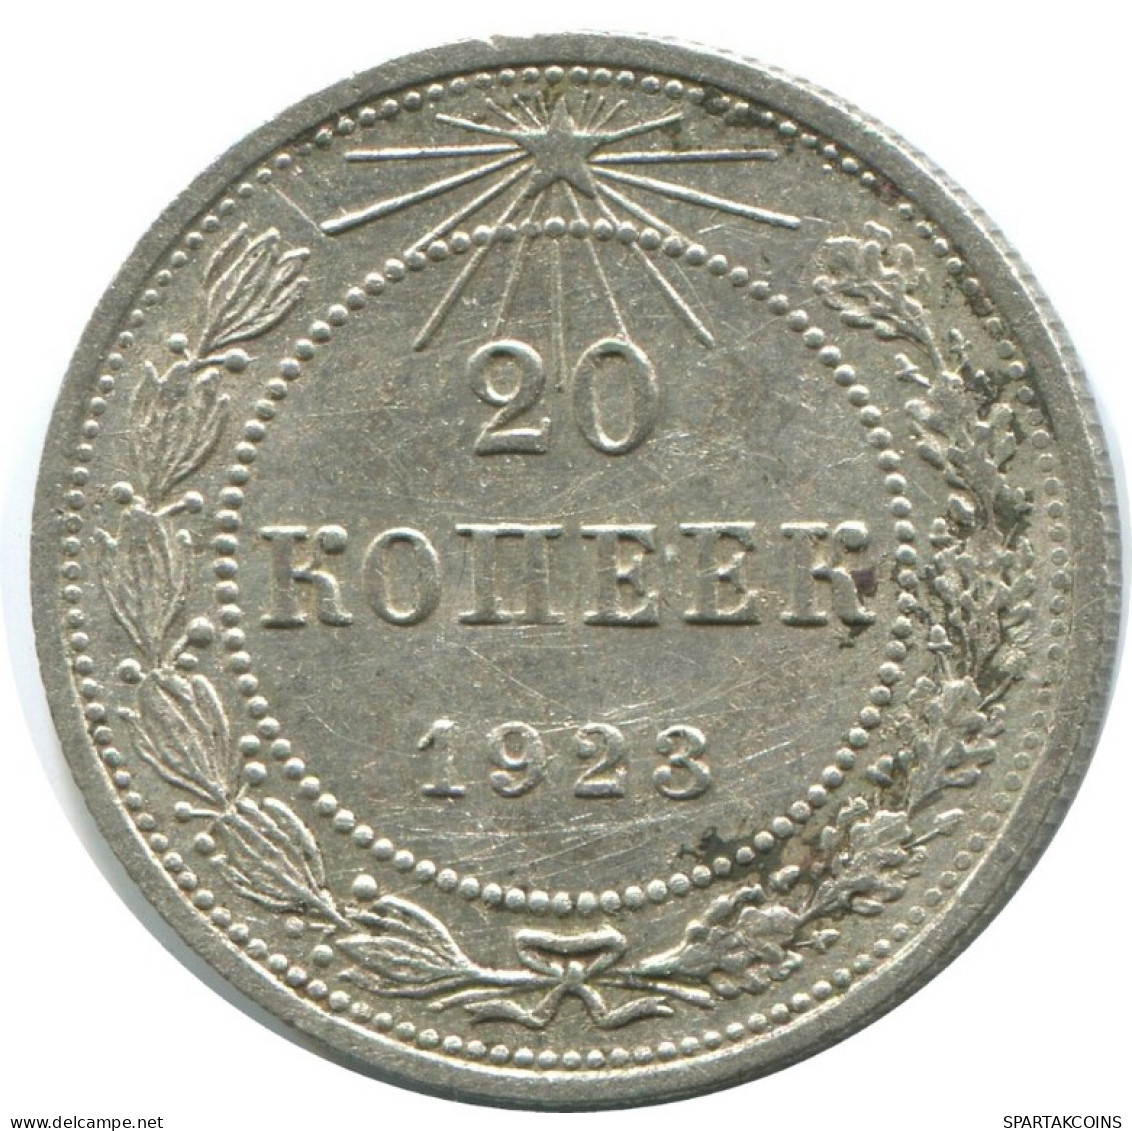 20 KOPEKS 1923 RUSSIA RSFSR SILVER Coin HIGH GRADE #AF608.U.A - Rusland